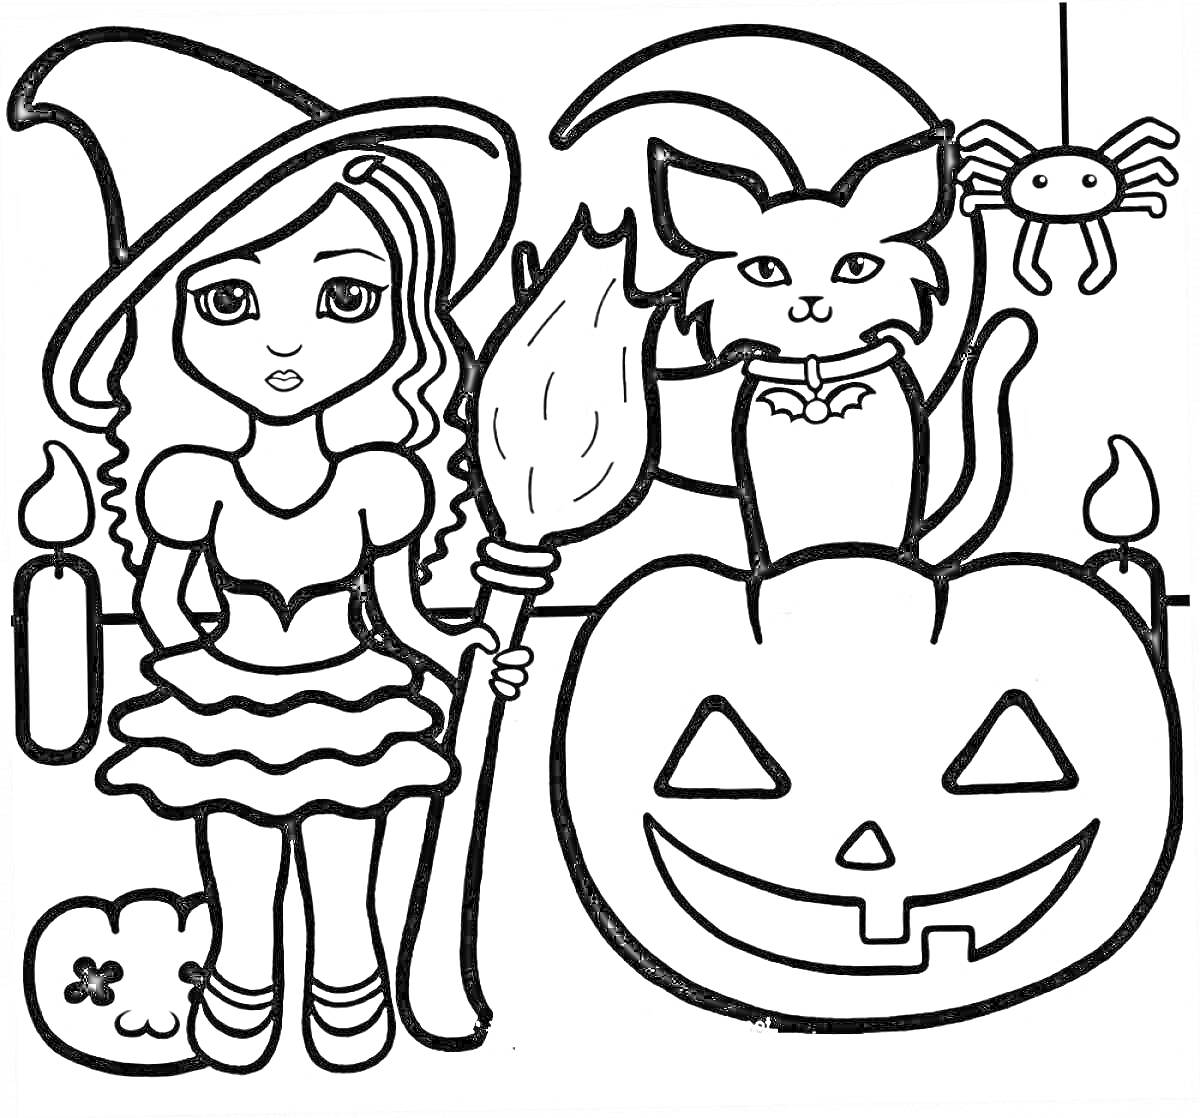 Раскраска Девочка-ведьма с метлой, черная кошка, тыква с вырезанным лицом, паук, две свечи, череп